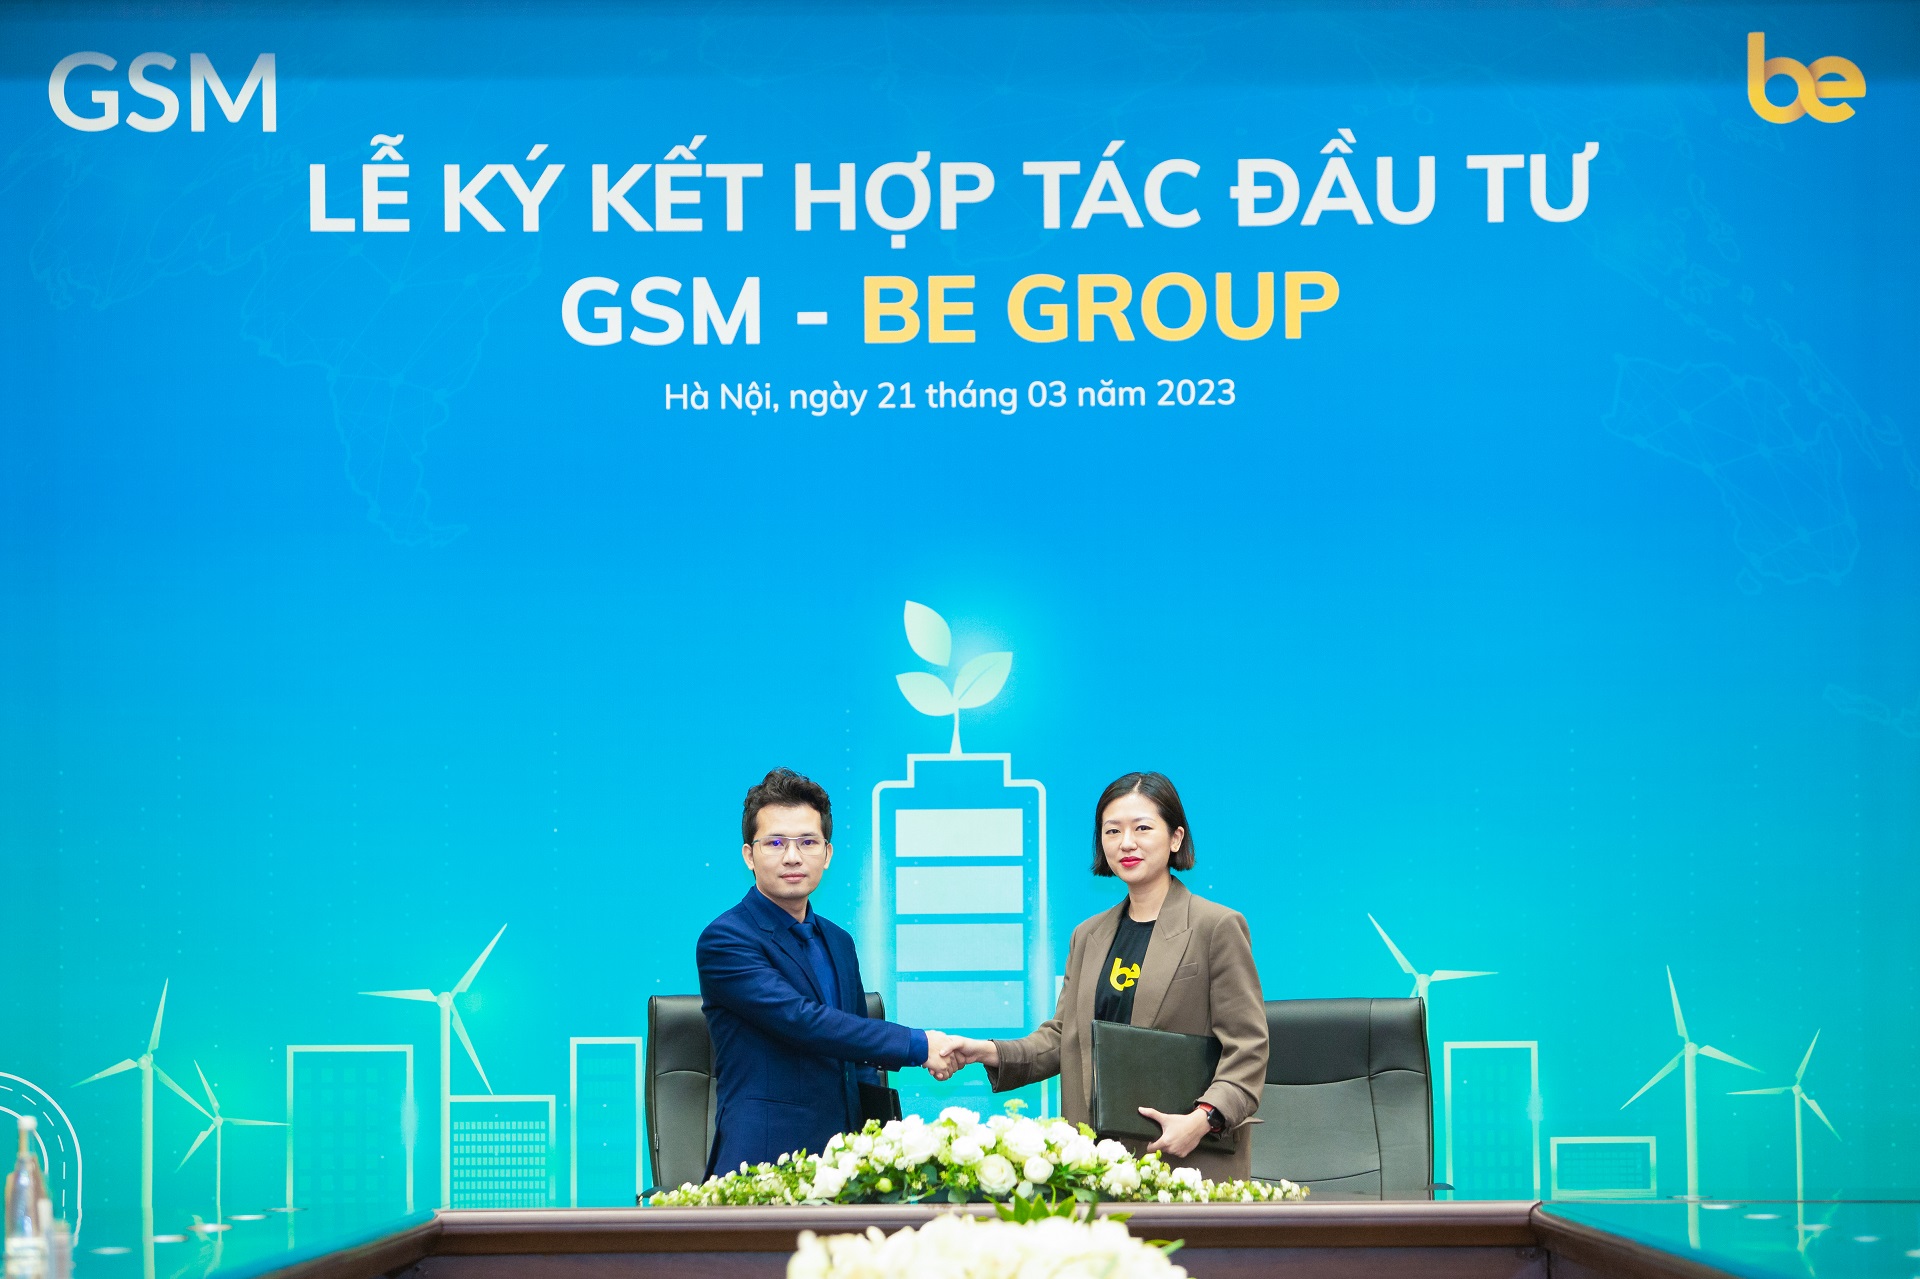 GSM Taxi VinFast đầu tư vào Be Group dùng chung ứng dụng đấu Grab - Ảnh 1.